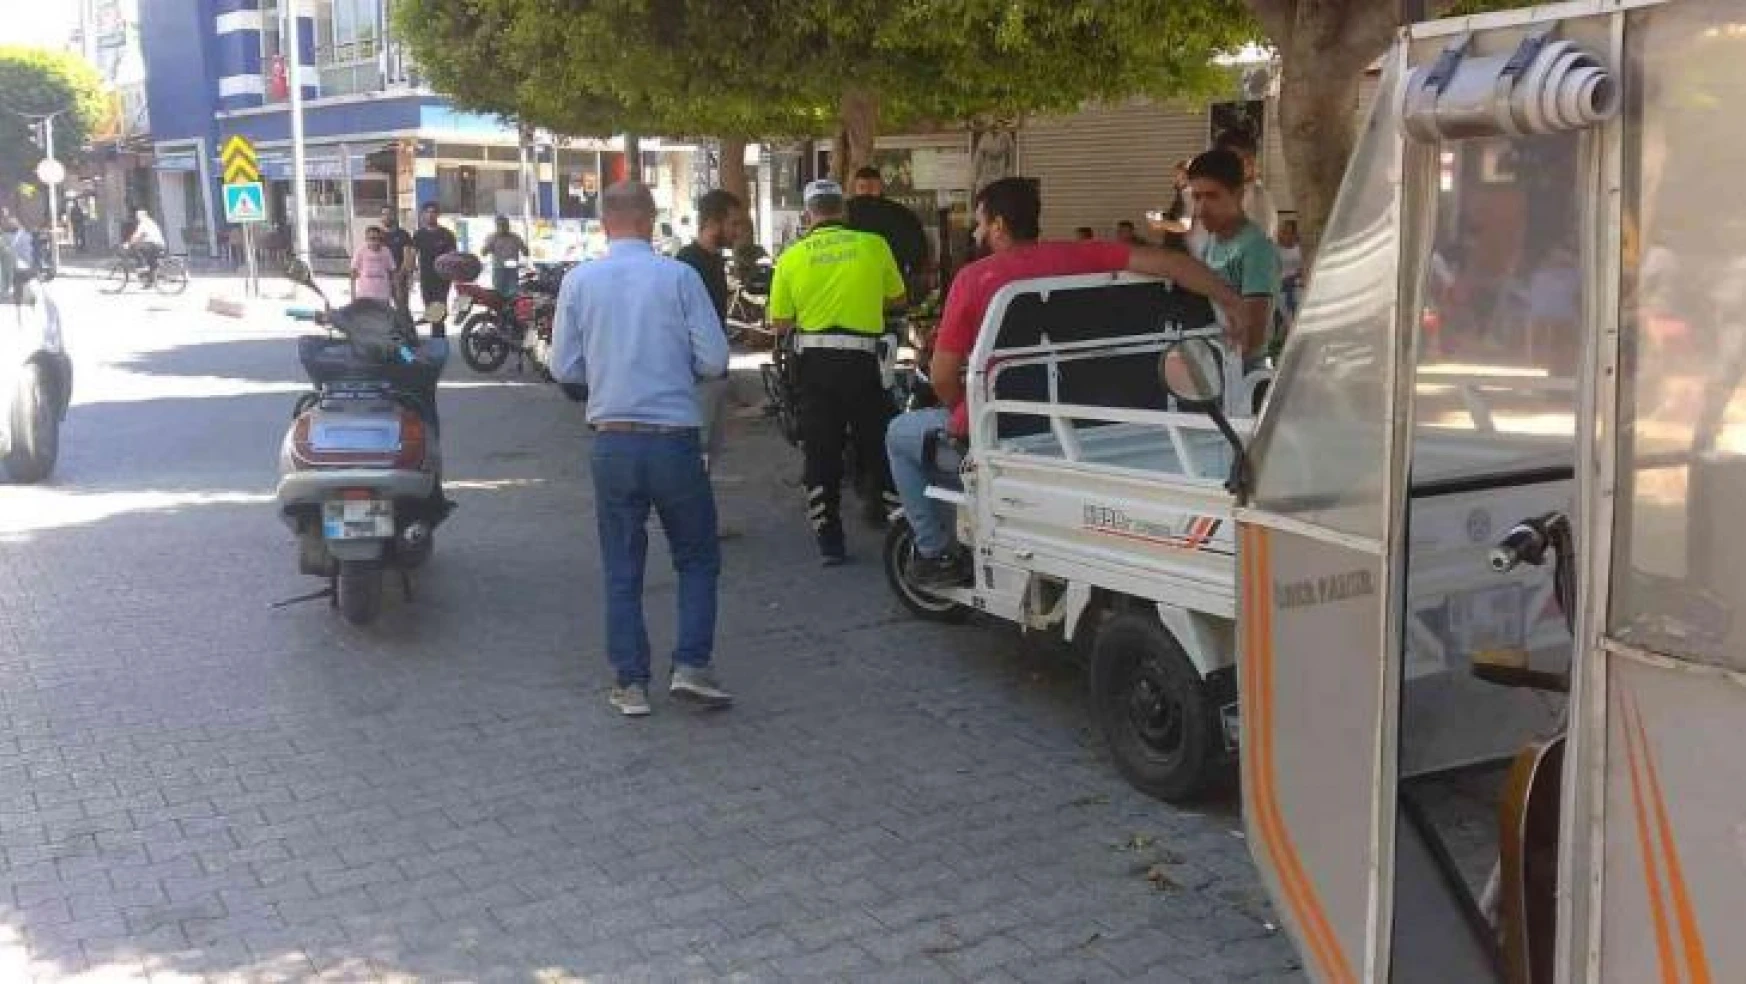 Adana'da kapkaç ve suçlarda kullanılan plakasız motosiklet uygulaması